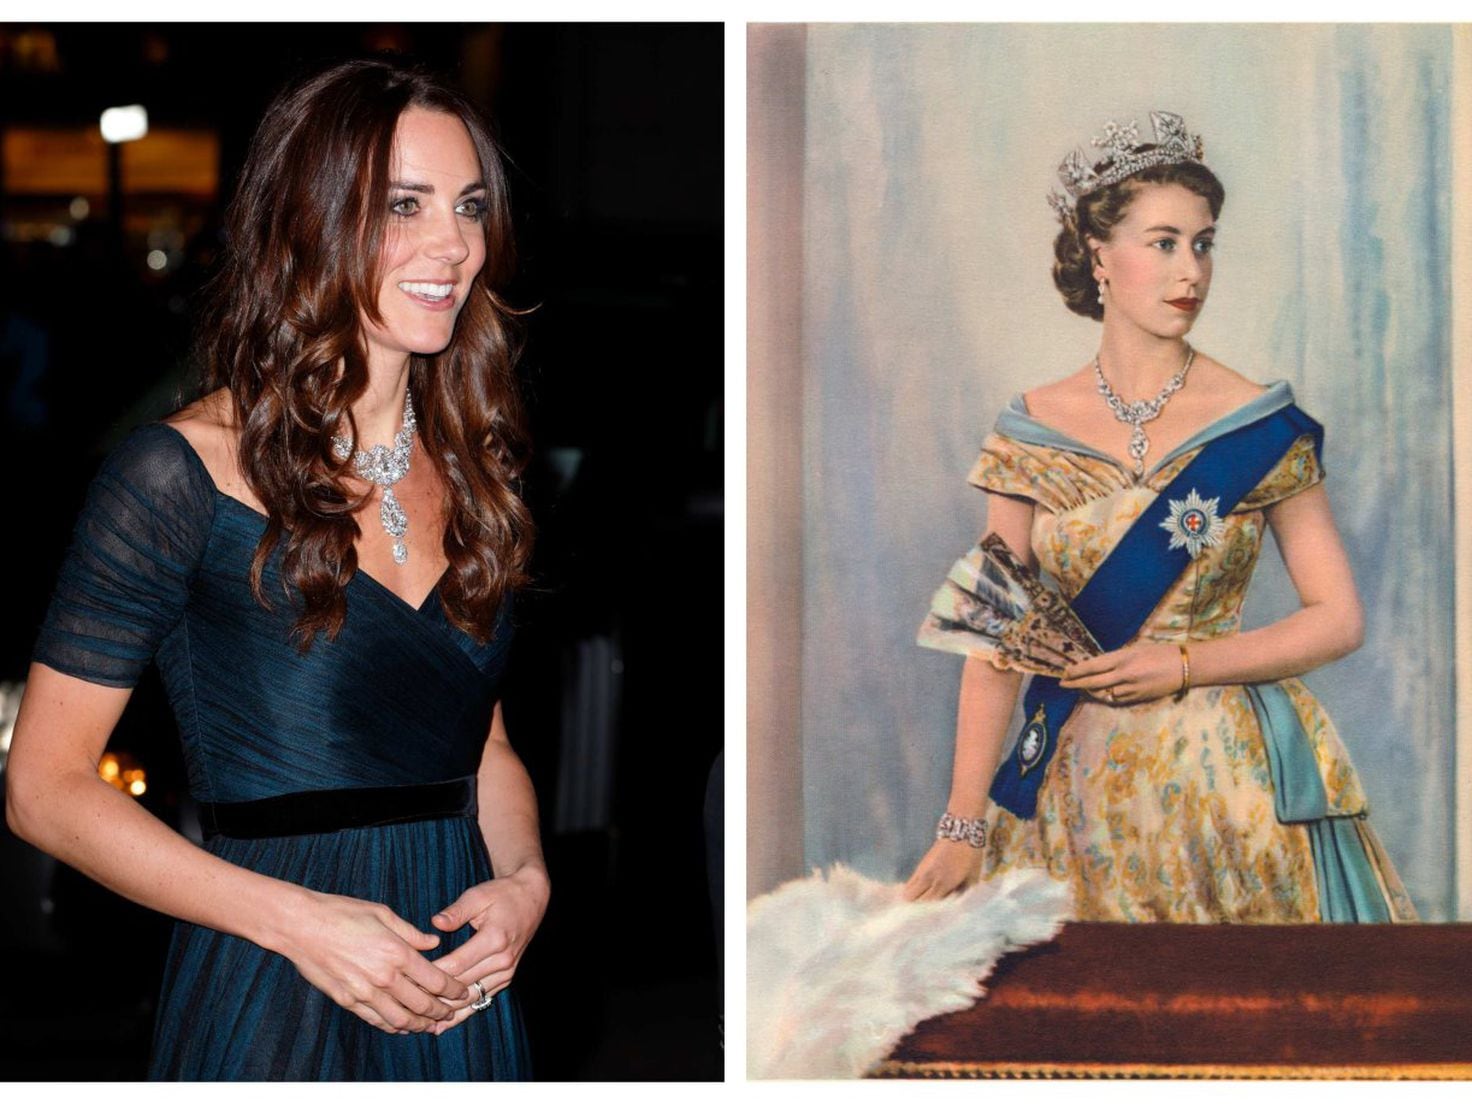 Kate Middleton a tiara the coronation? - AS USA